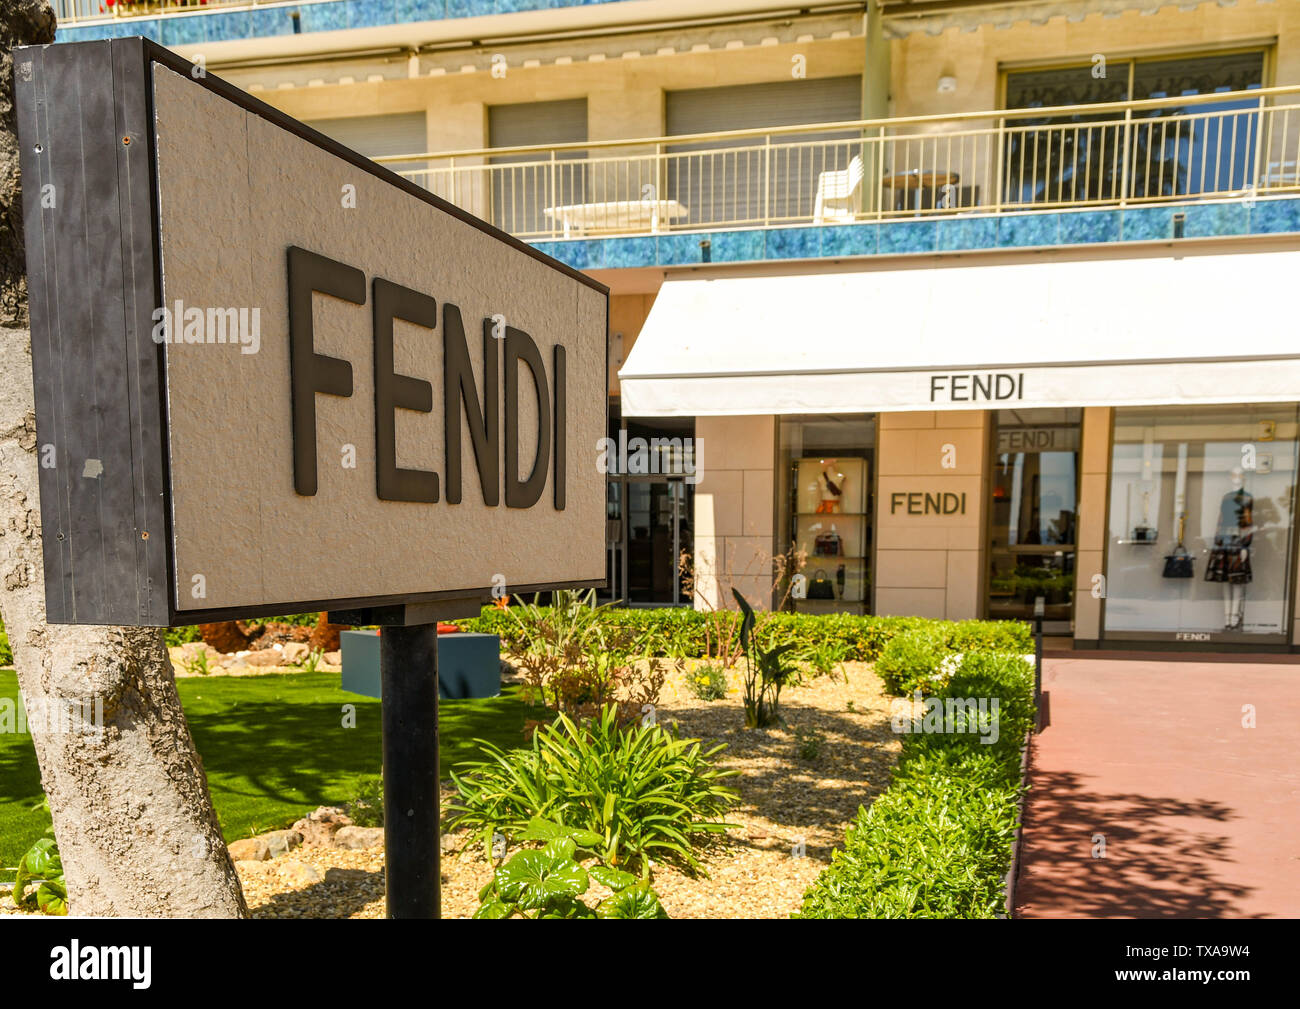 Fendi Storefront Stock Photos - Free & Royalty-Free Stock Photos